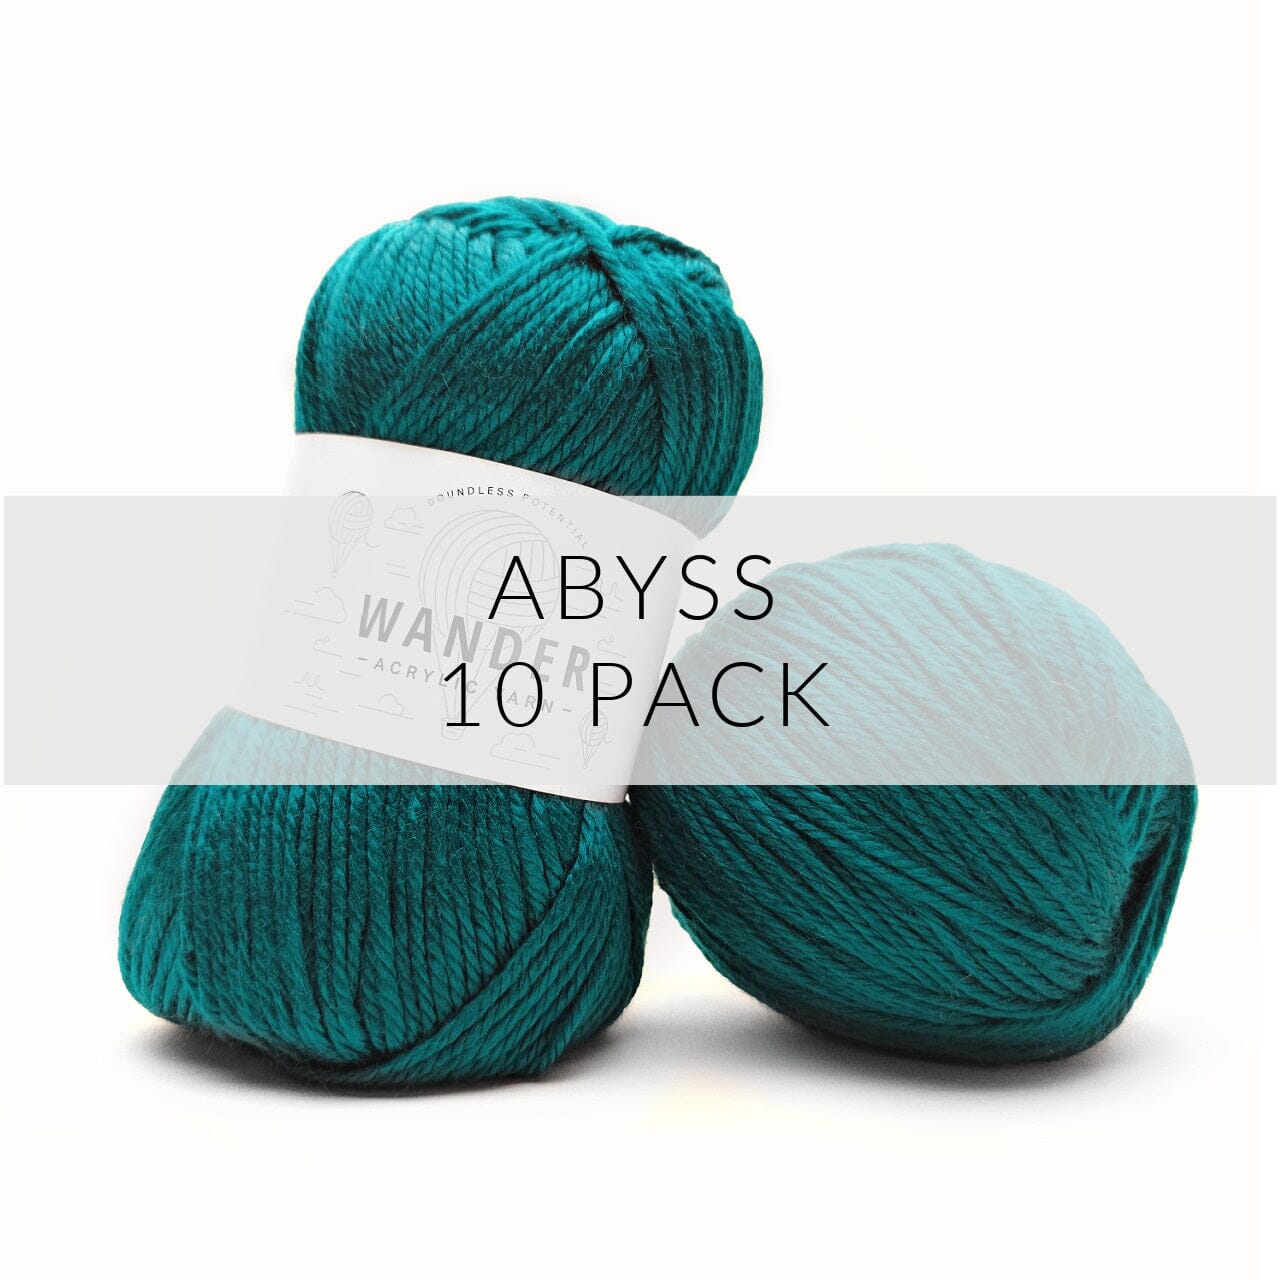 10 Pack Wander Acrylic Yarn Yarn FurlsCrochet Abyss 